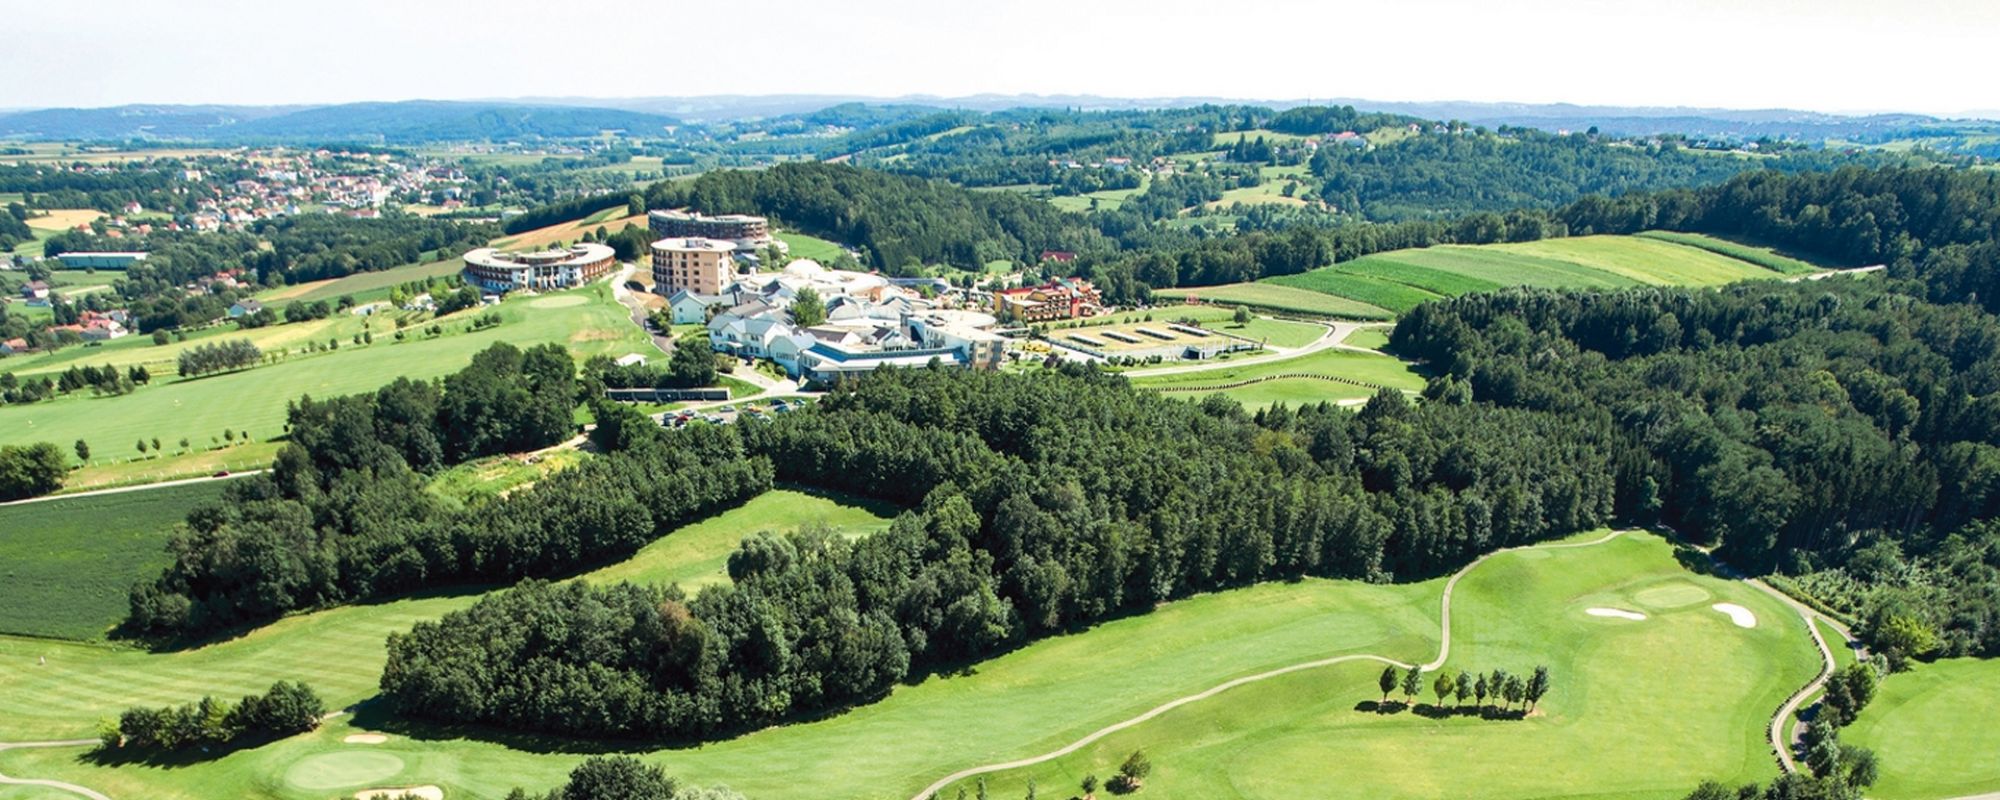 Stegersbach golfsving